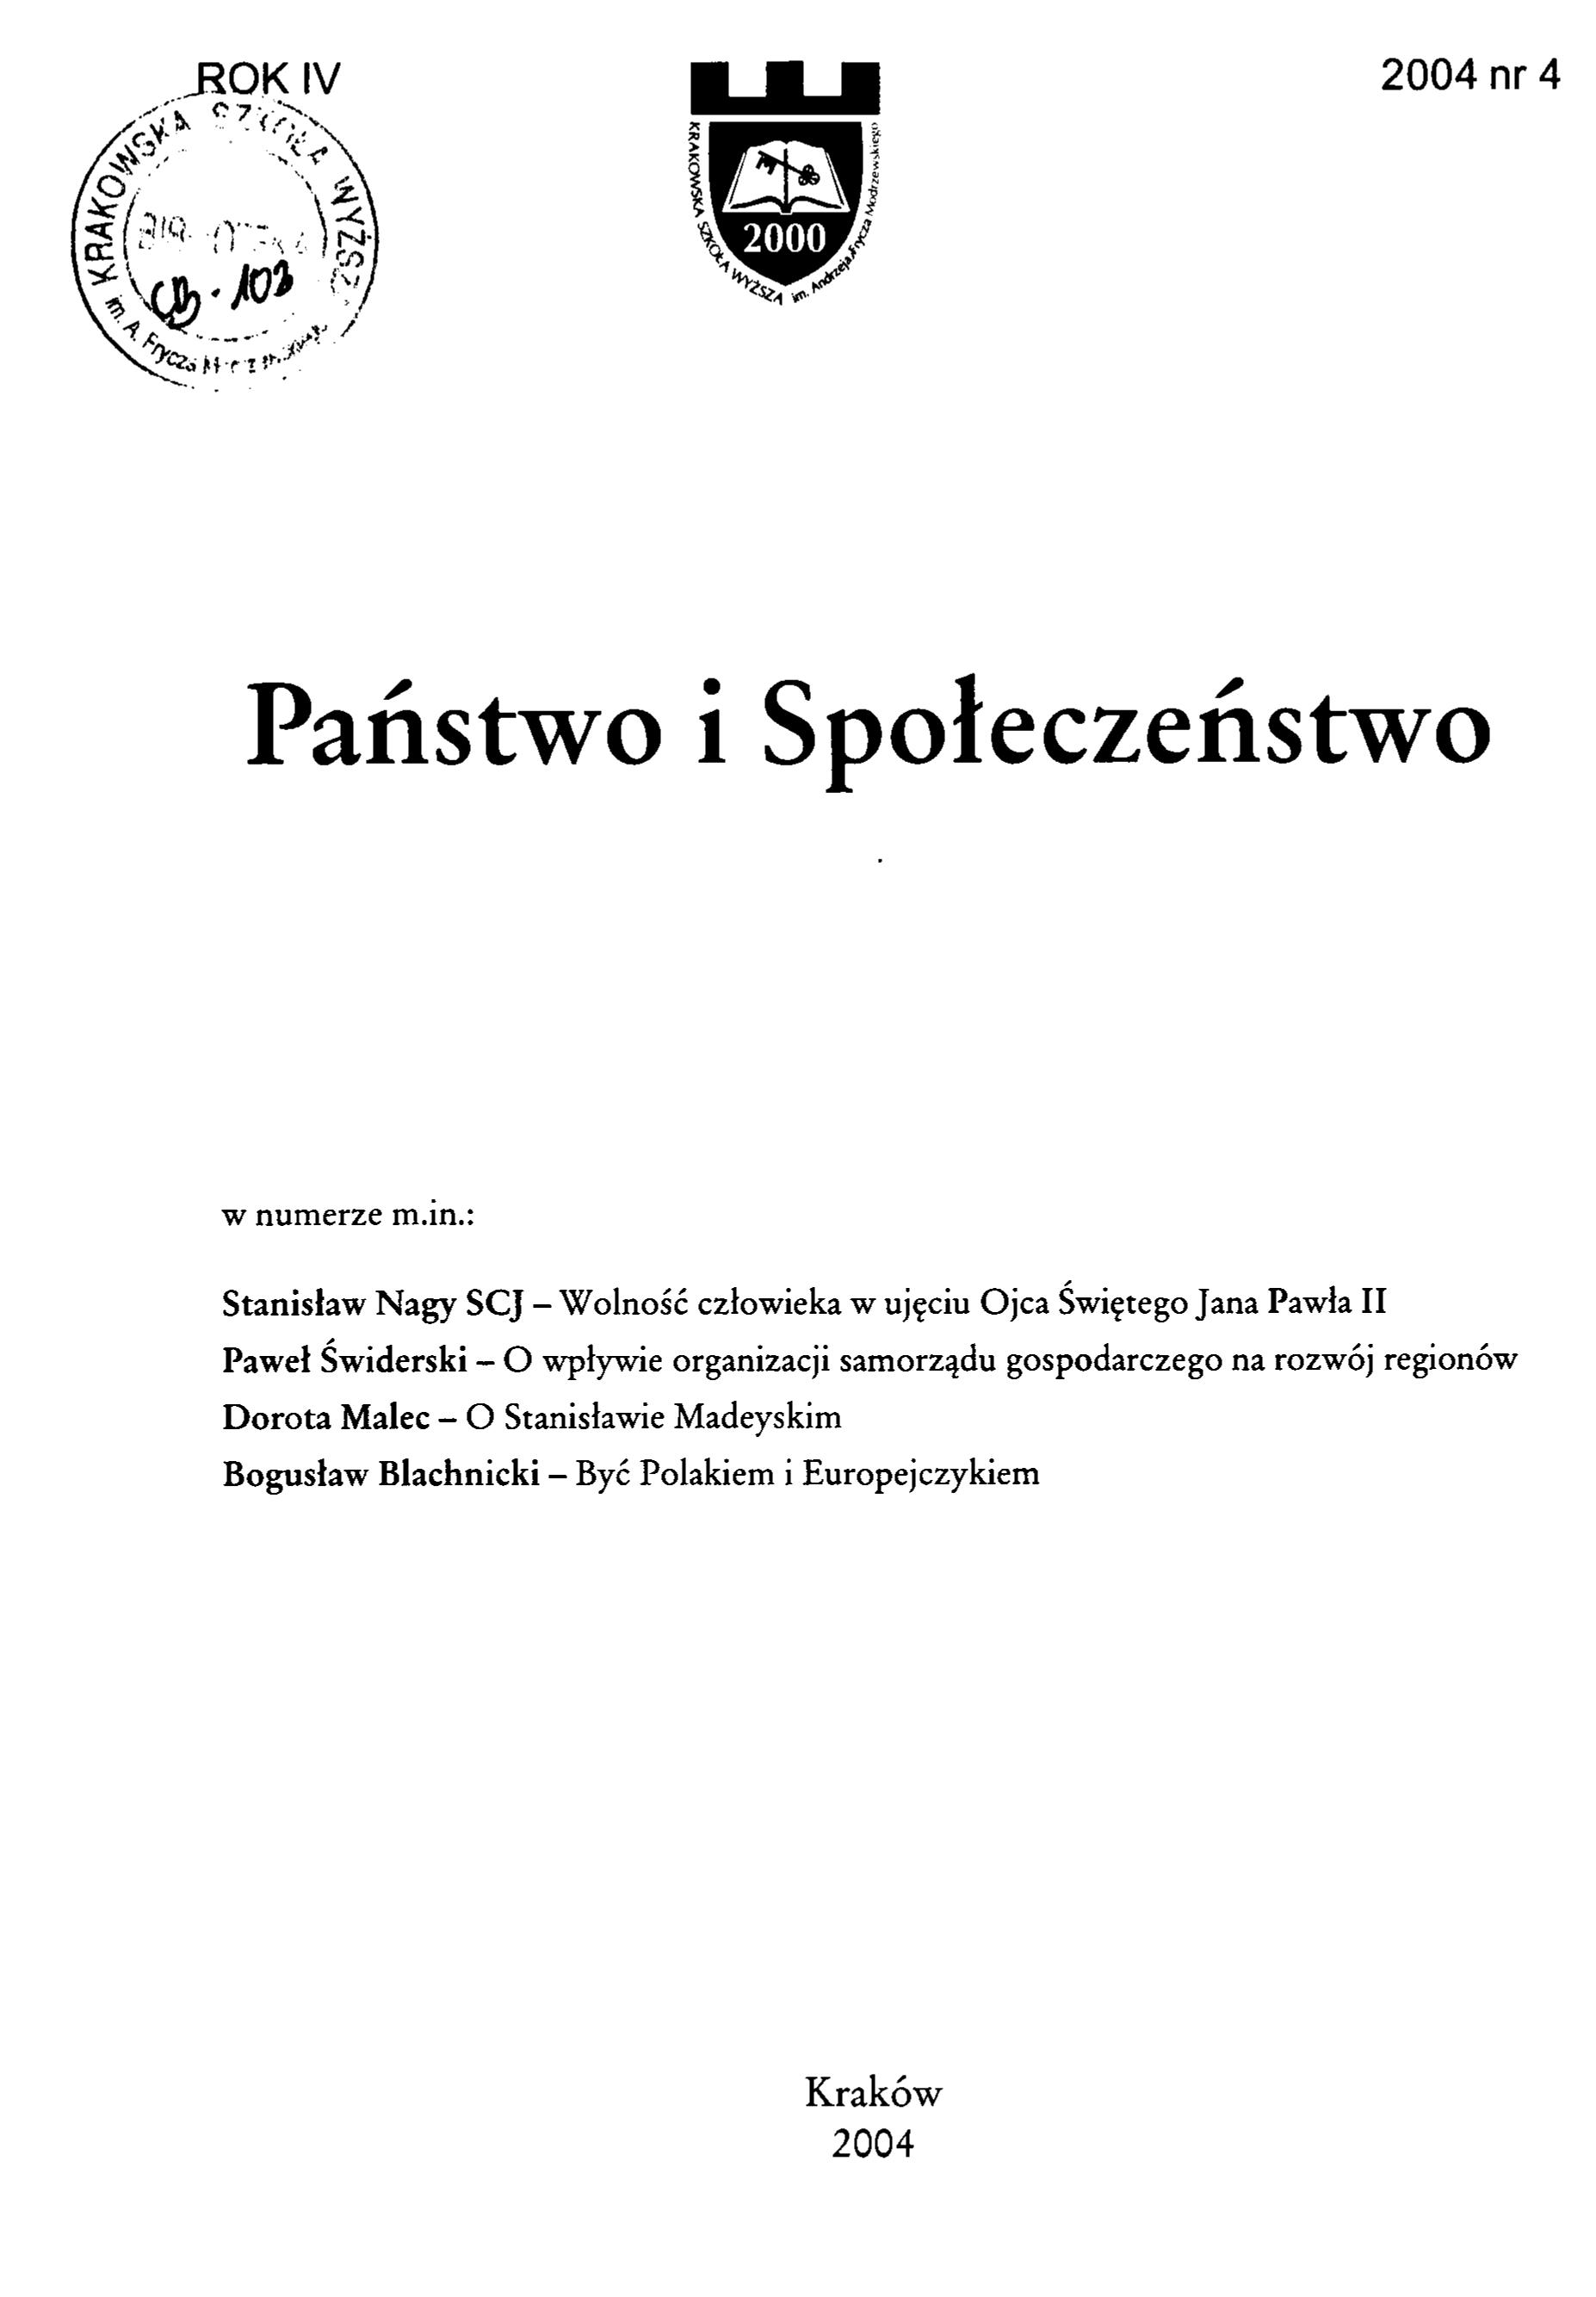 Andrzej Frycz Modrzewski - spelling doubt removed Cover Image